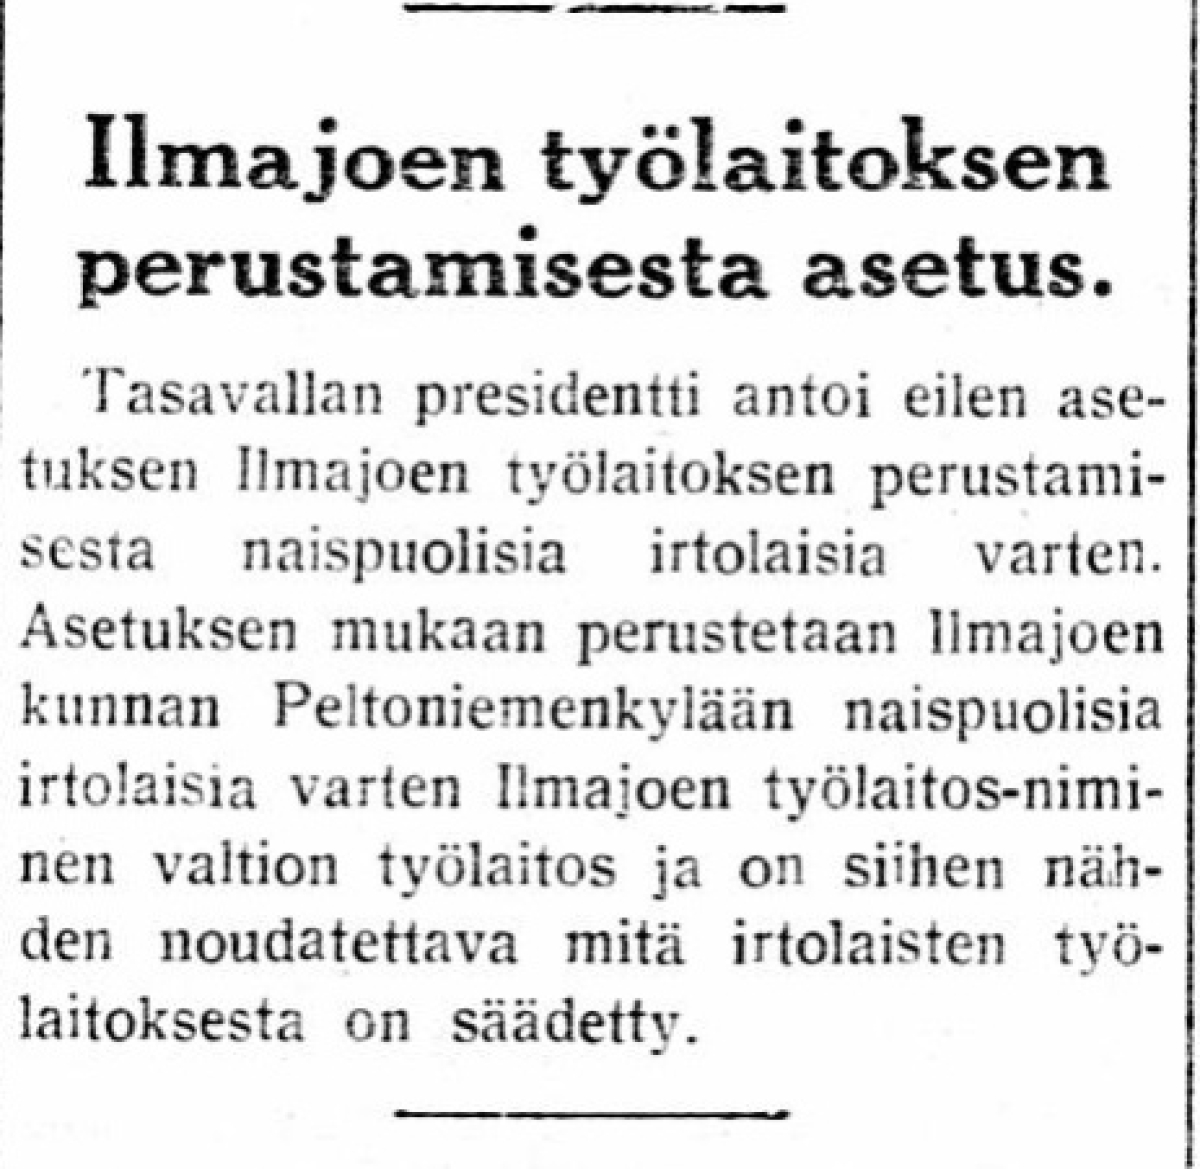 Ilmajoen työlaitos perustettiin presidentin asetuksella 1937. Ilkka uutisoi.